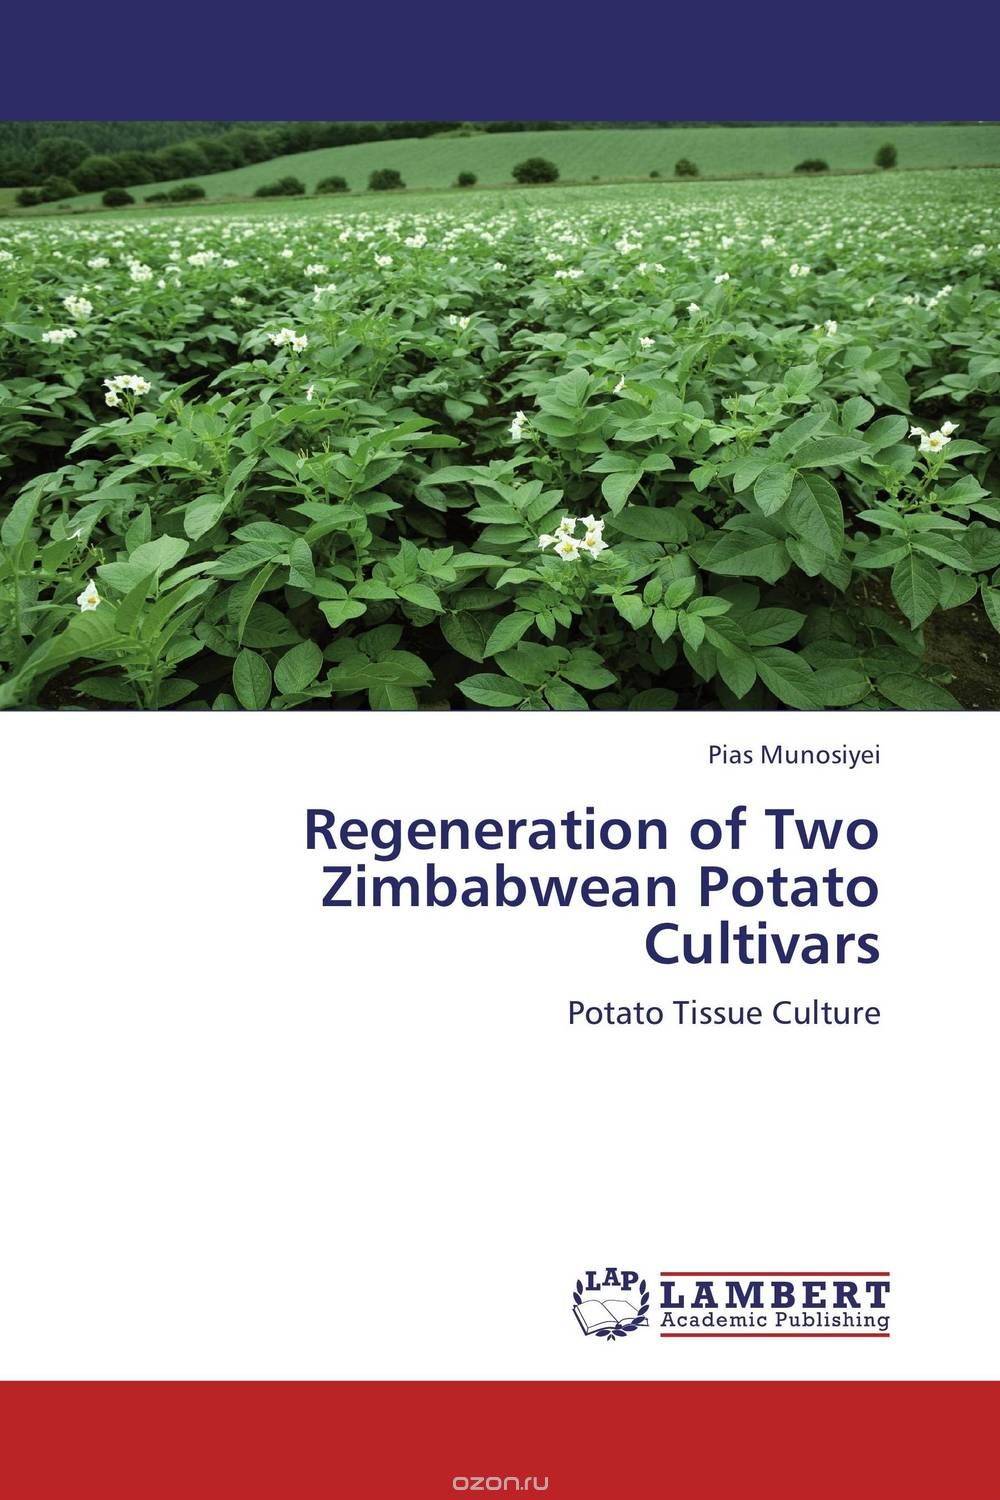 Скачать книгу "Regeneration of Two Zimbabwean Potato Cultivars"